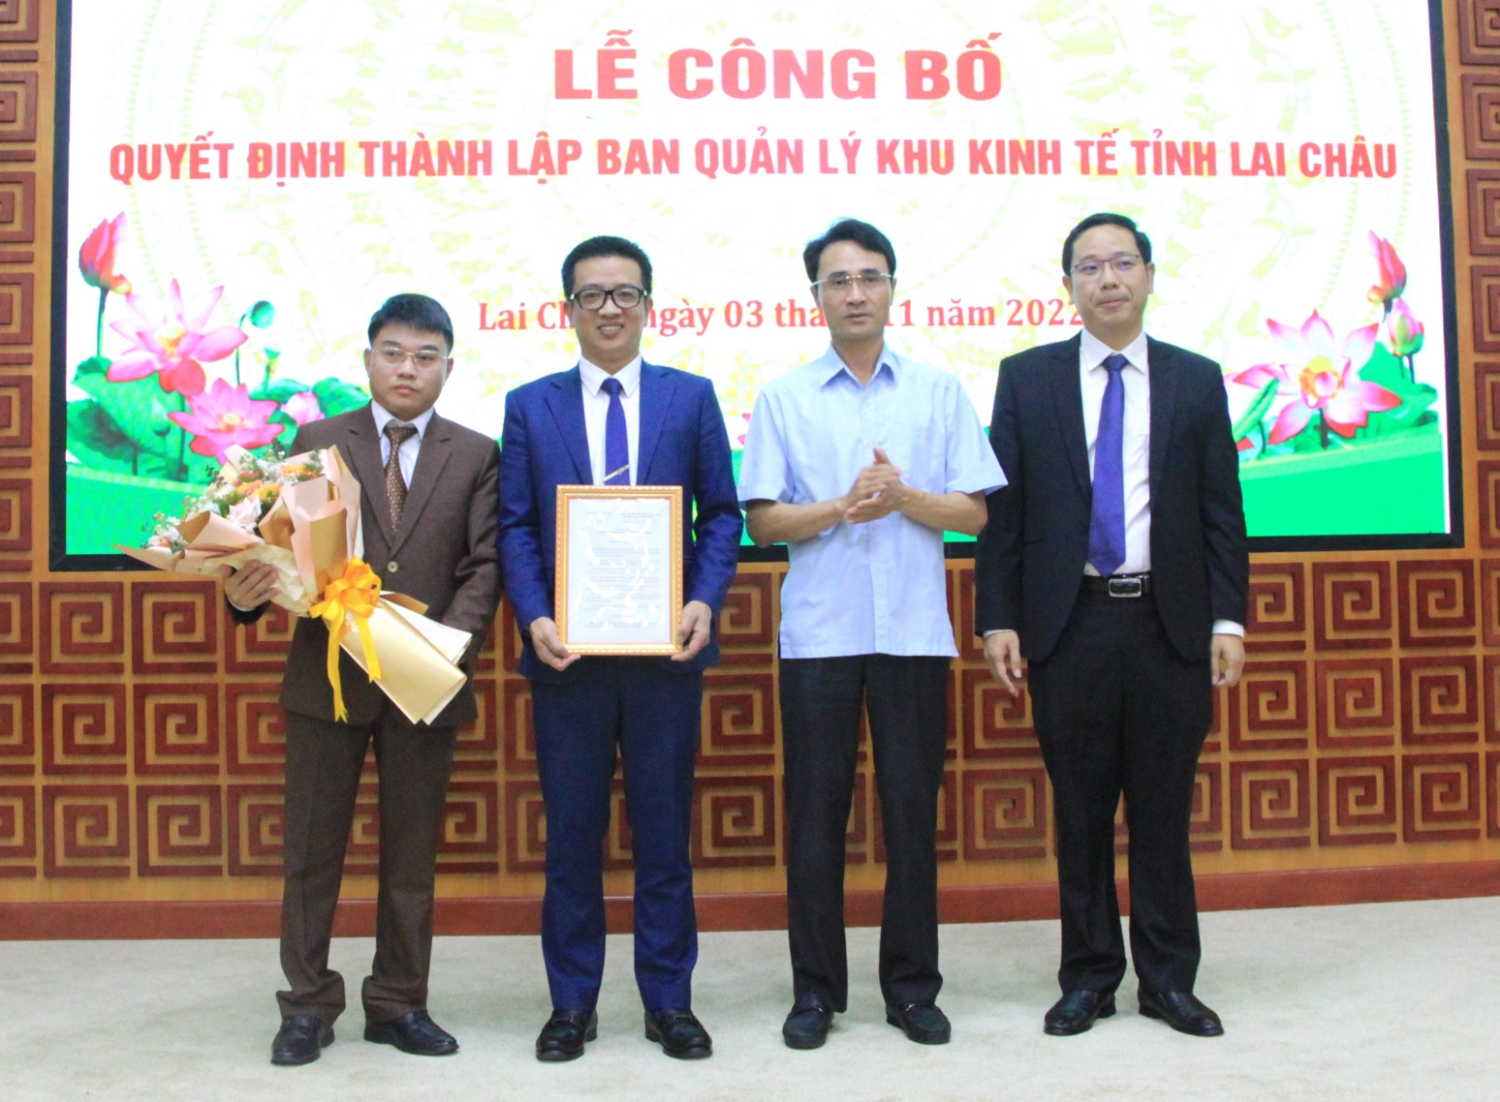 Đồng chí Hà Trọng Hải – Tỉnh ủy viên, Phó Chủ tịch UBND tỉnh trao Quyết định và tặng hoa chúc mừng tập thể lãnh đạo Ban Quản lý Khu kinh tế tỉnh Lai Châu